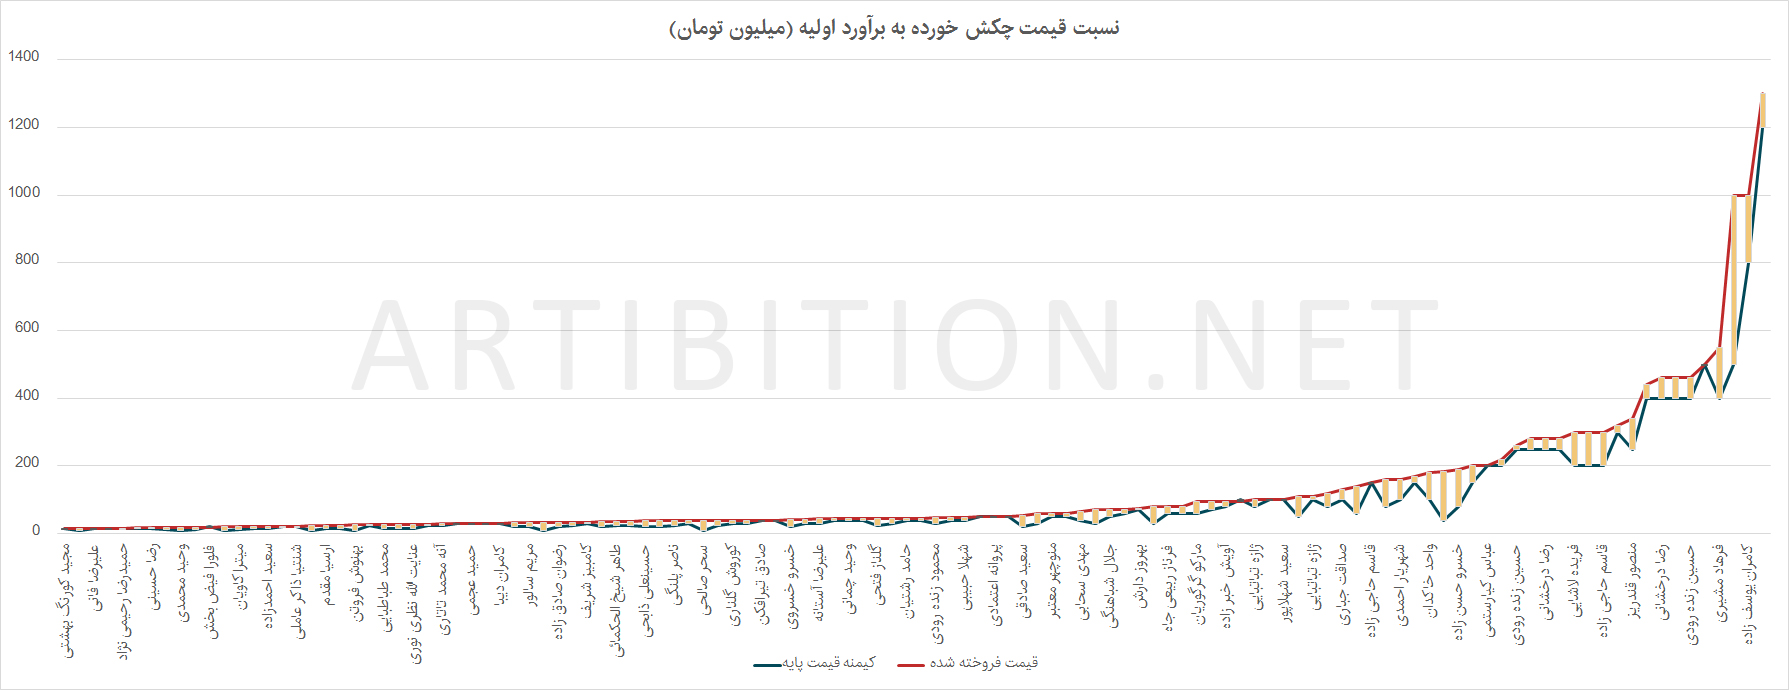 نمودار نسبت قیمت چکش خورده آثار هشتمین دوره حراج تهران به برآورد اولیه آنها